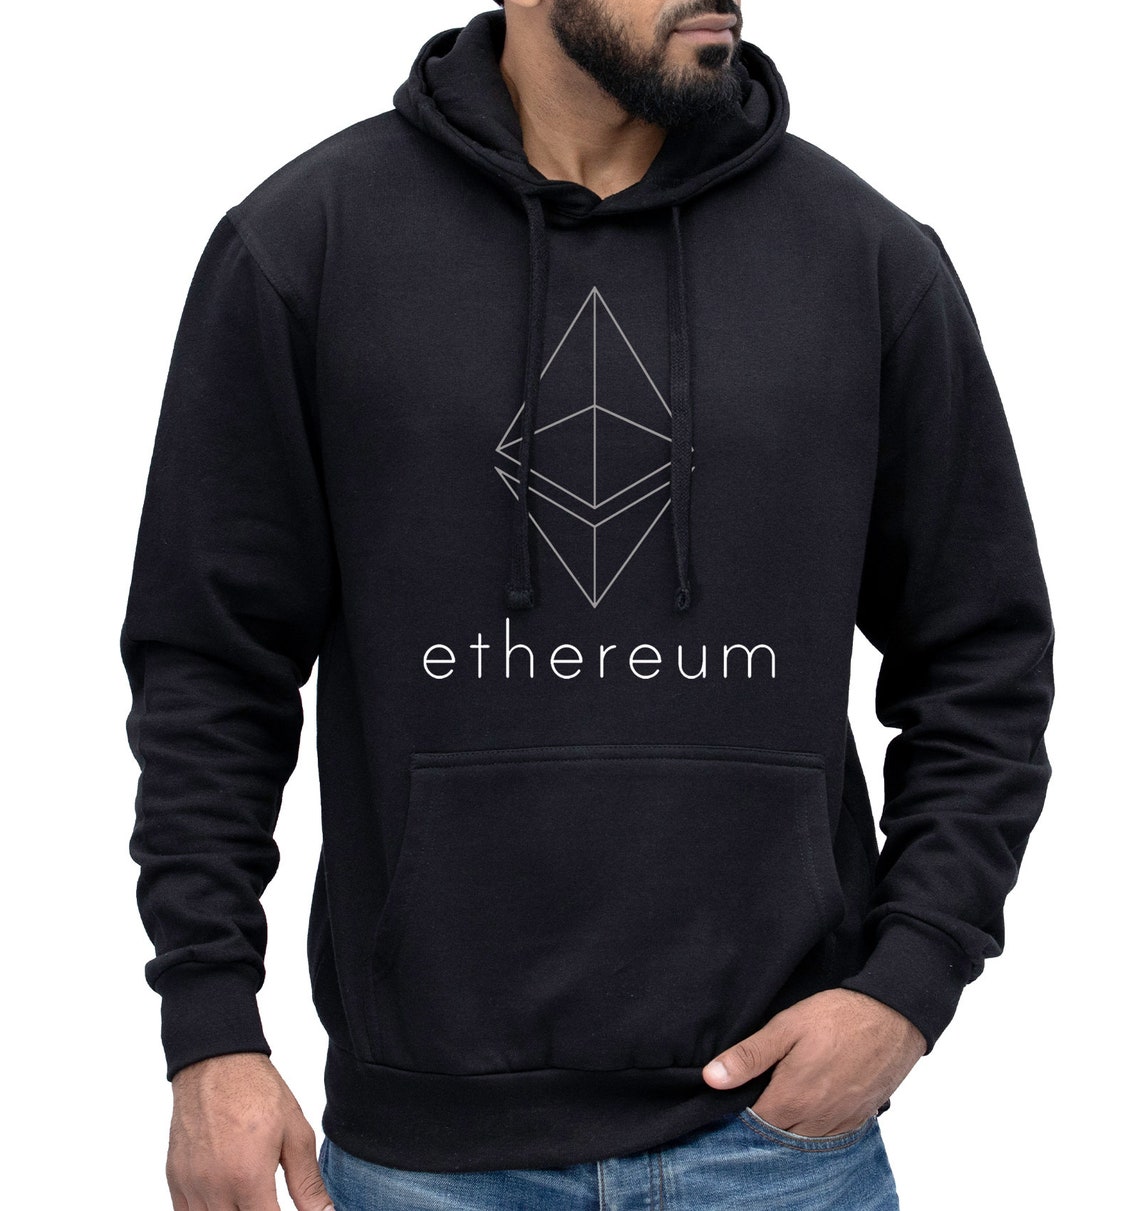 ethereum hoodie